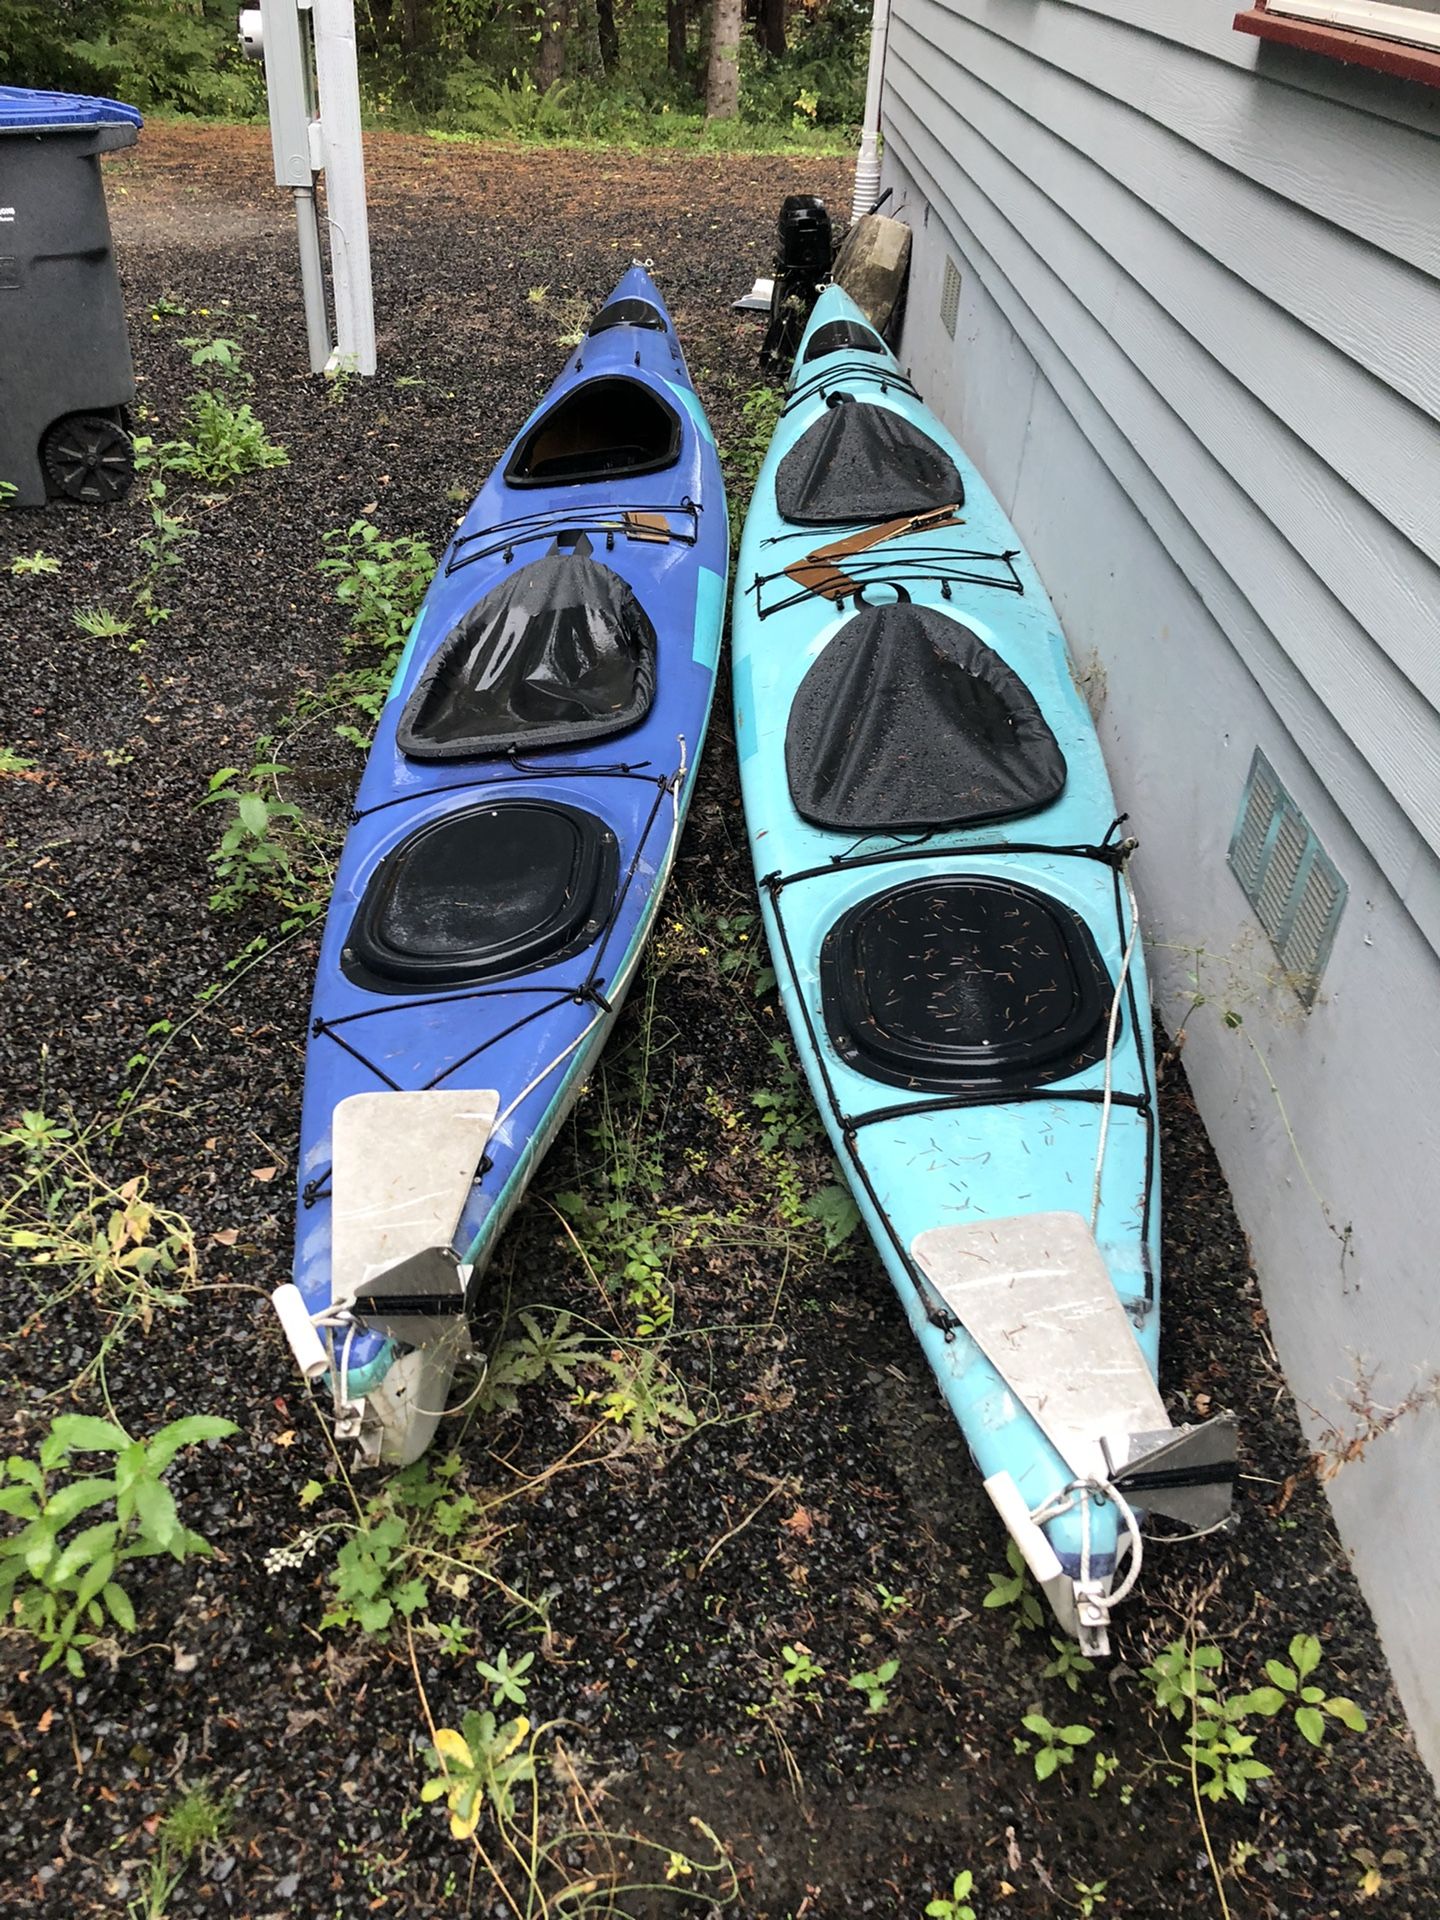 2 x Tandem Kayaks PRICE REDUCED